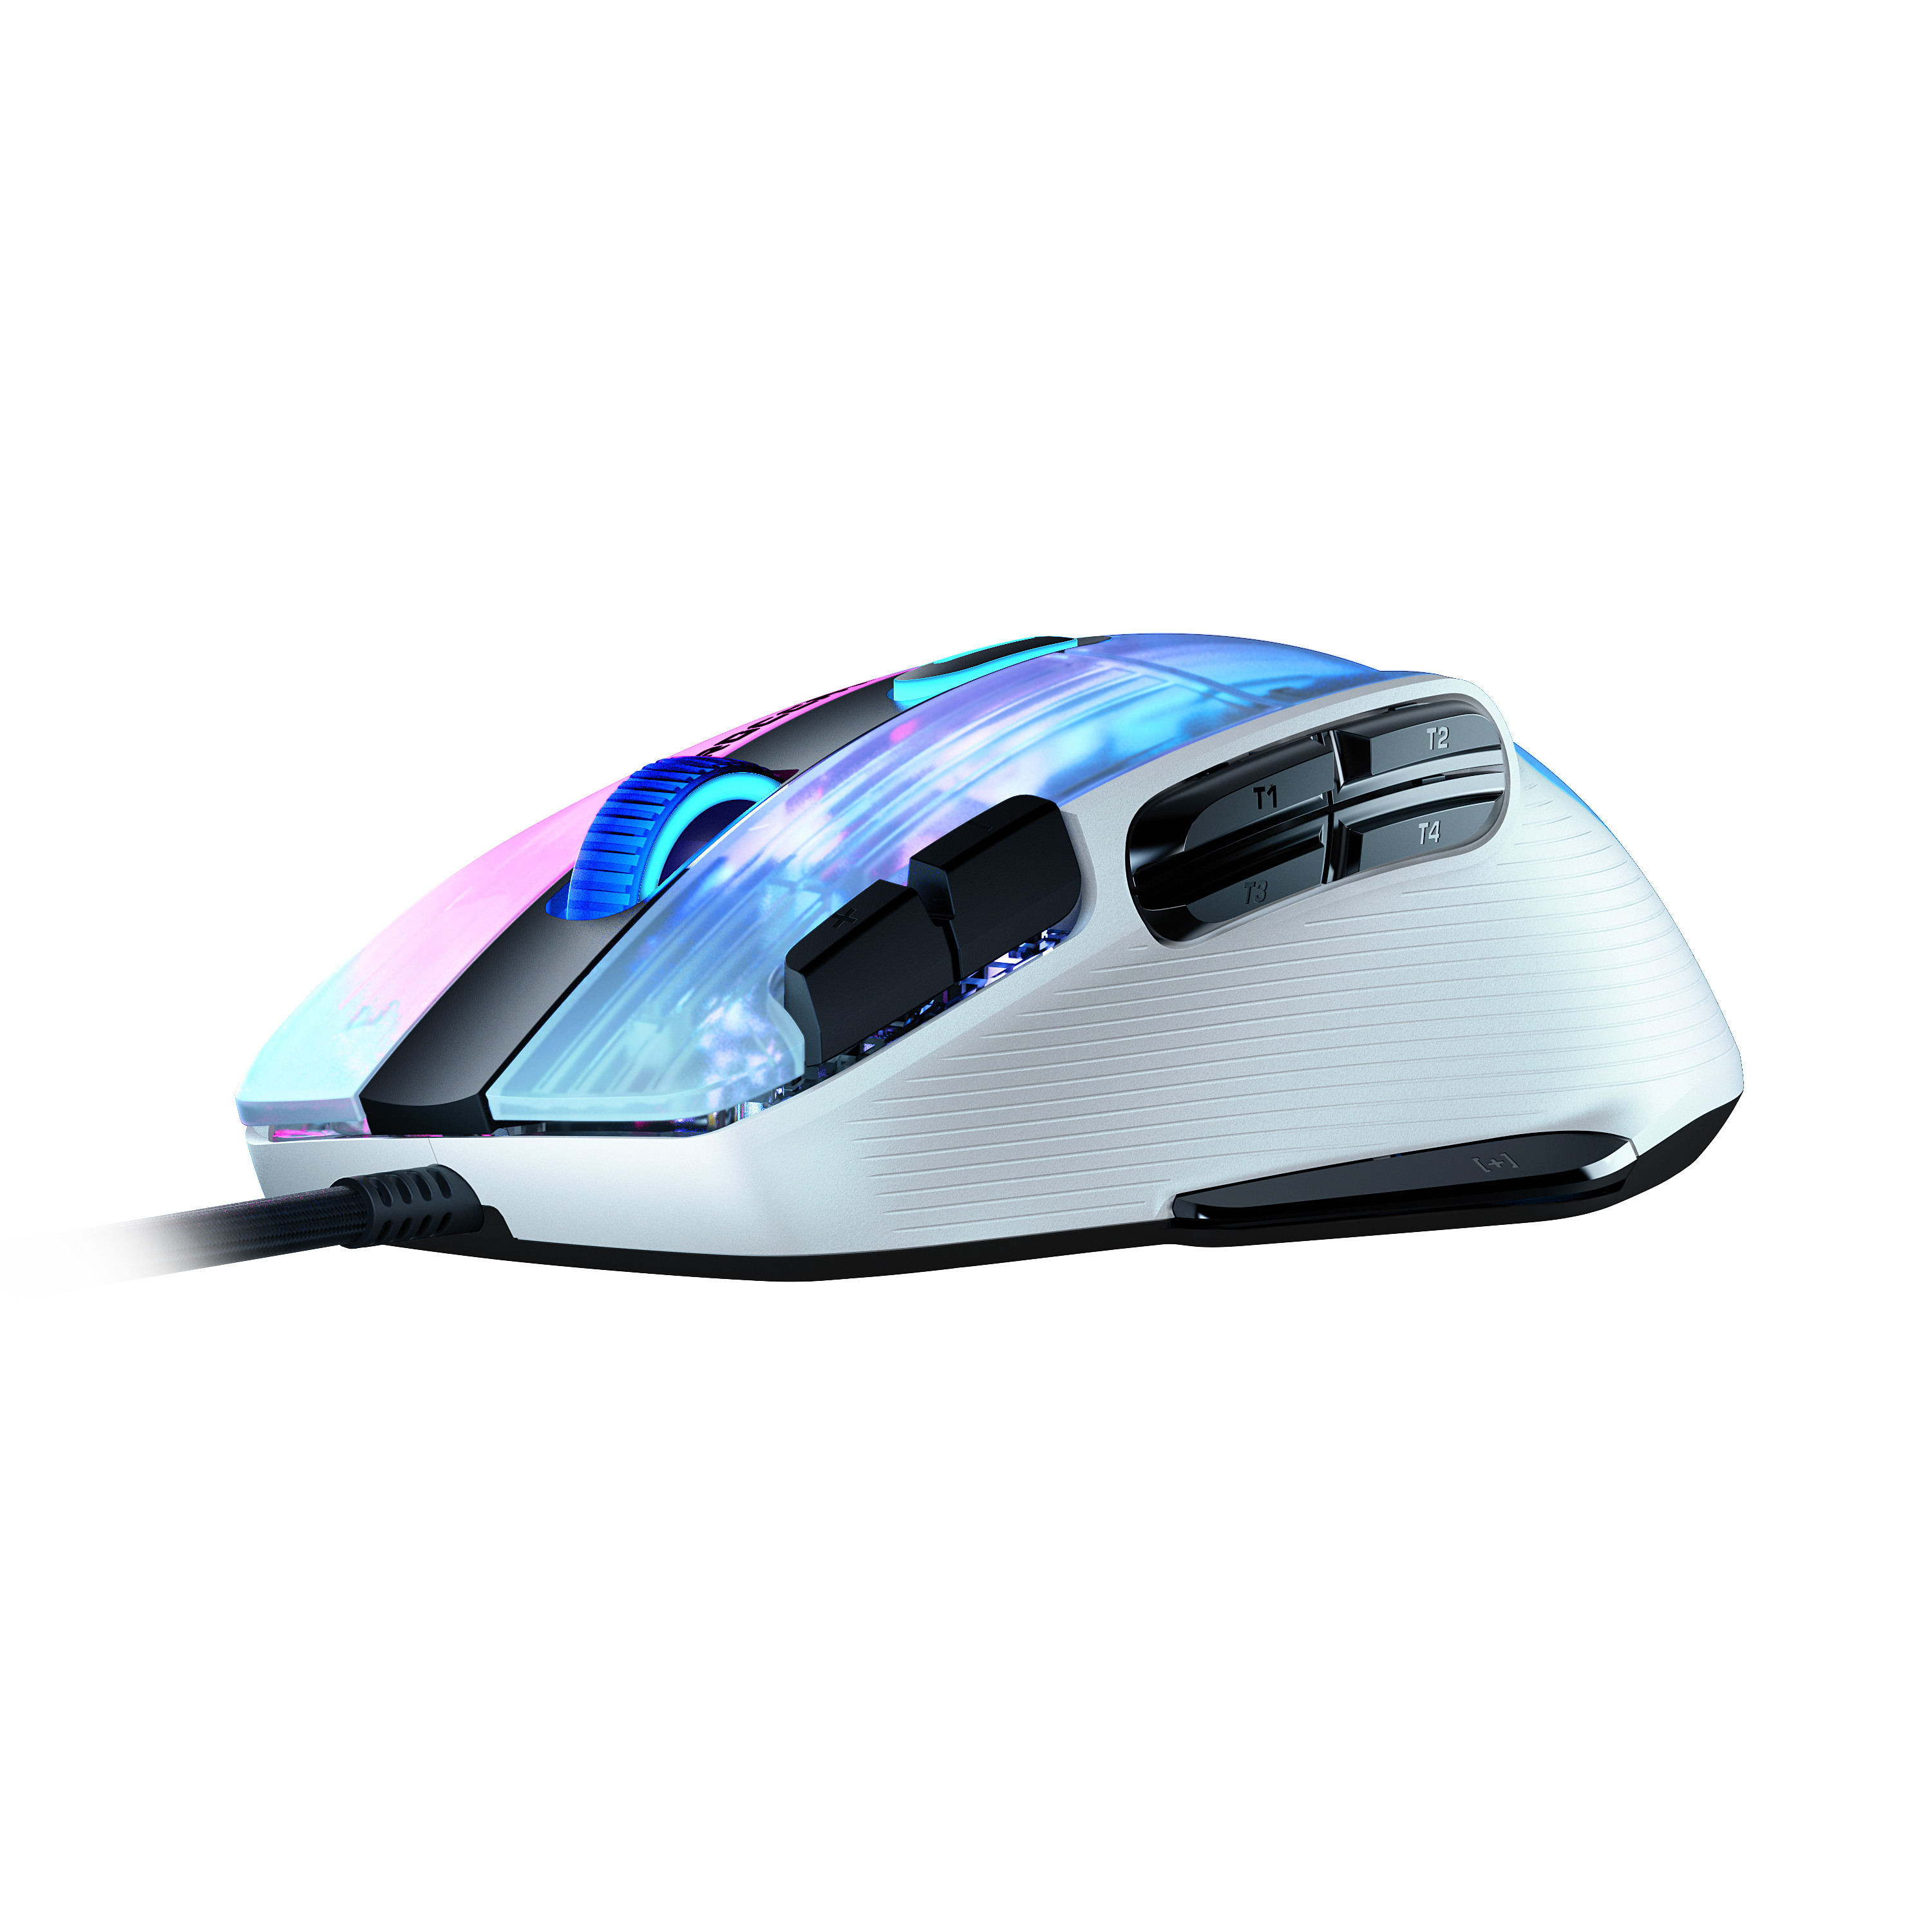 ROCCAT Kone XP Gaming Mouse ROC-11-425-02 White